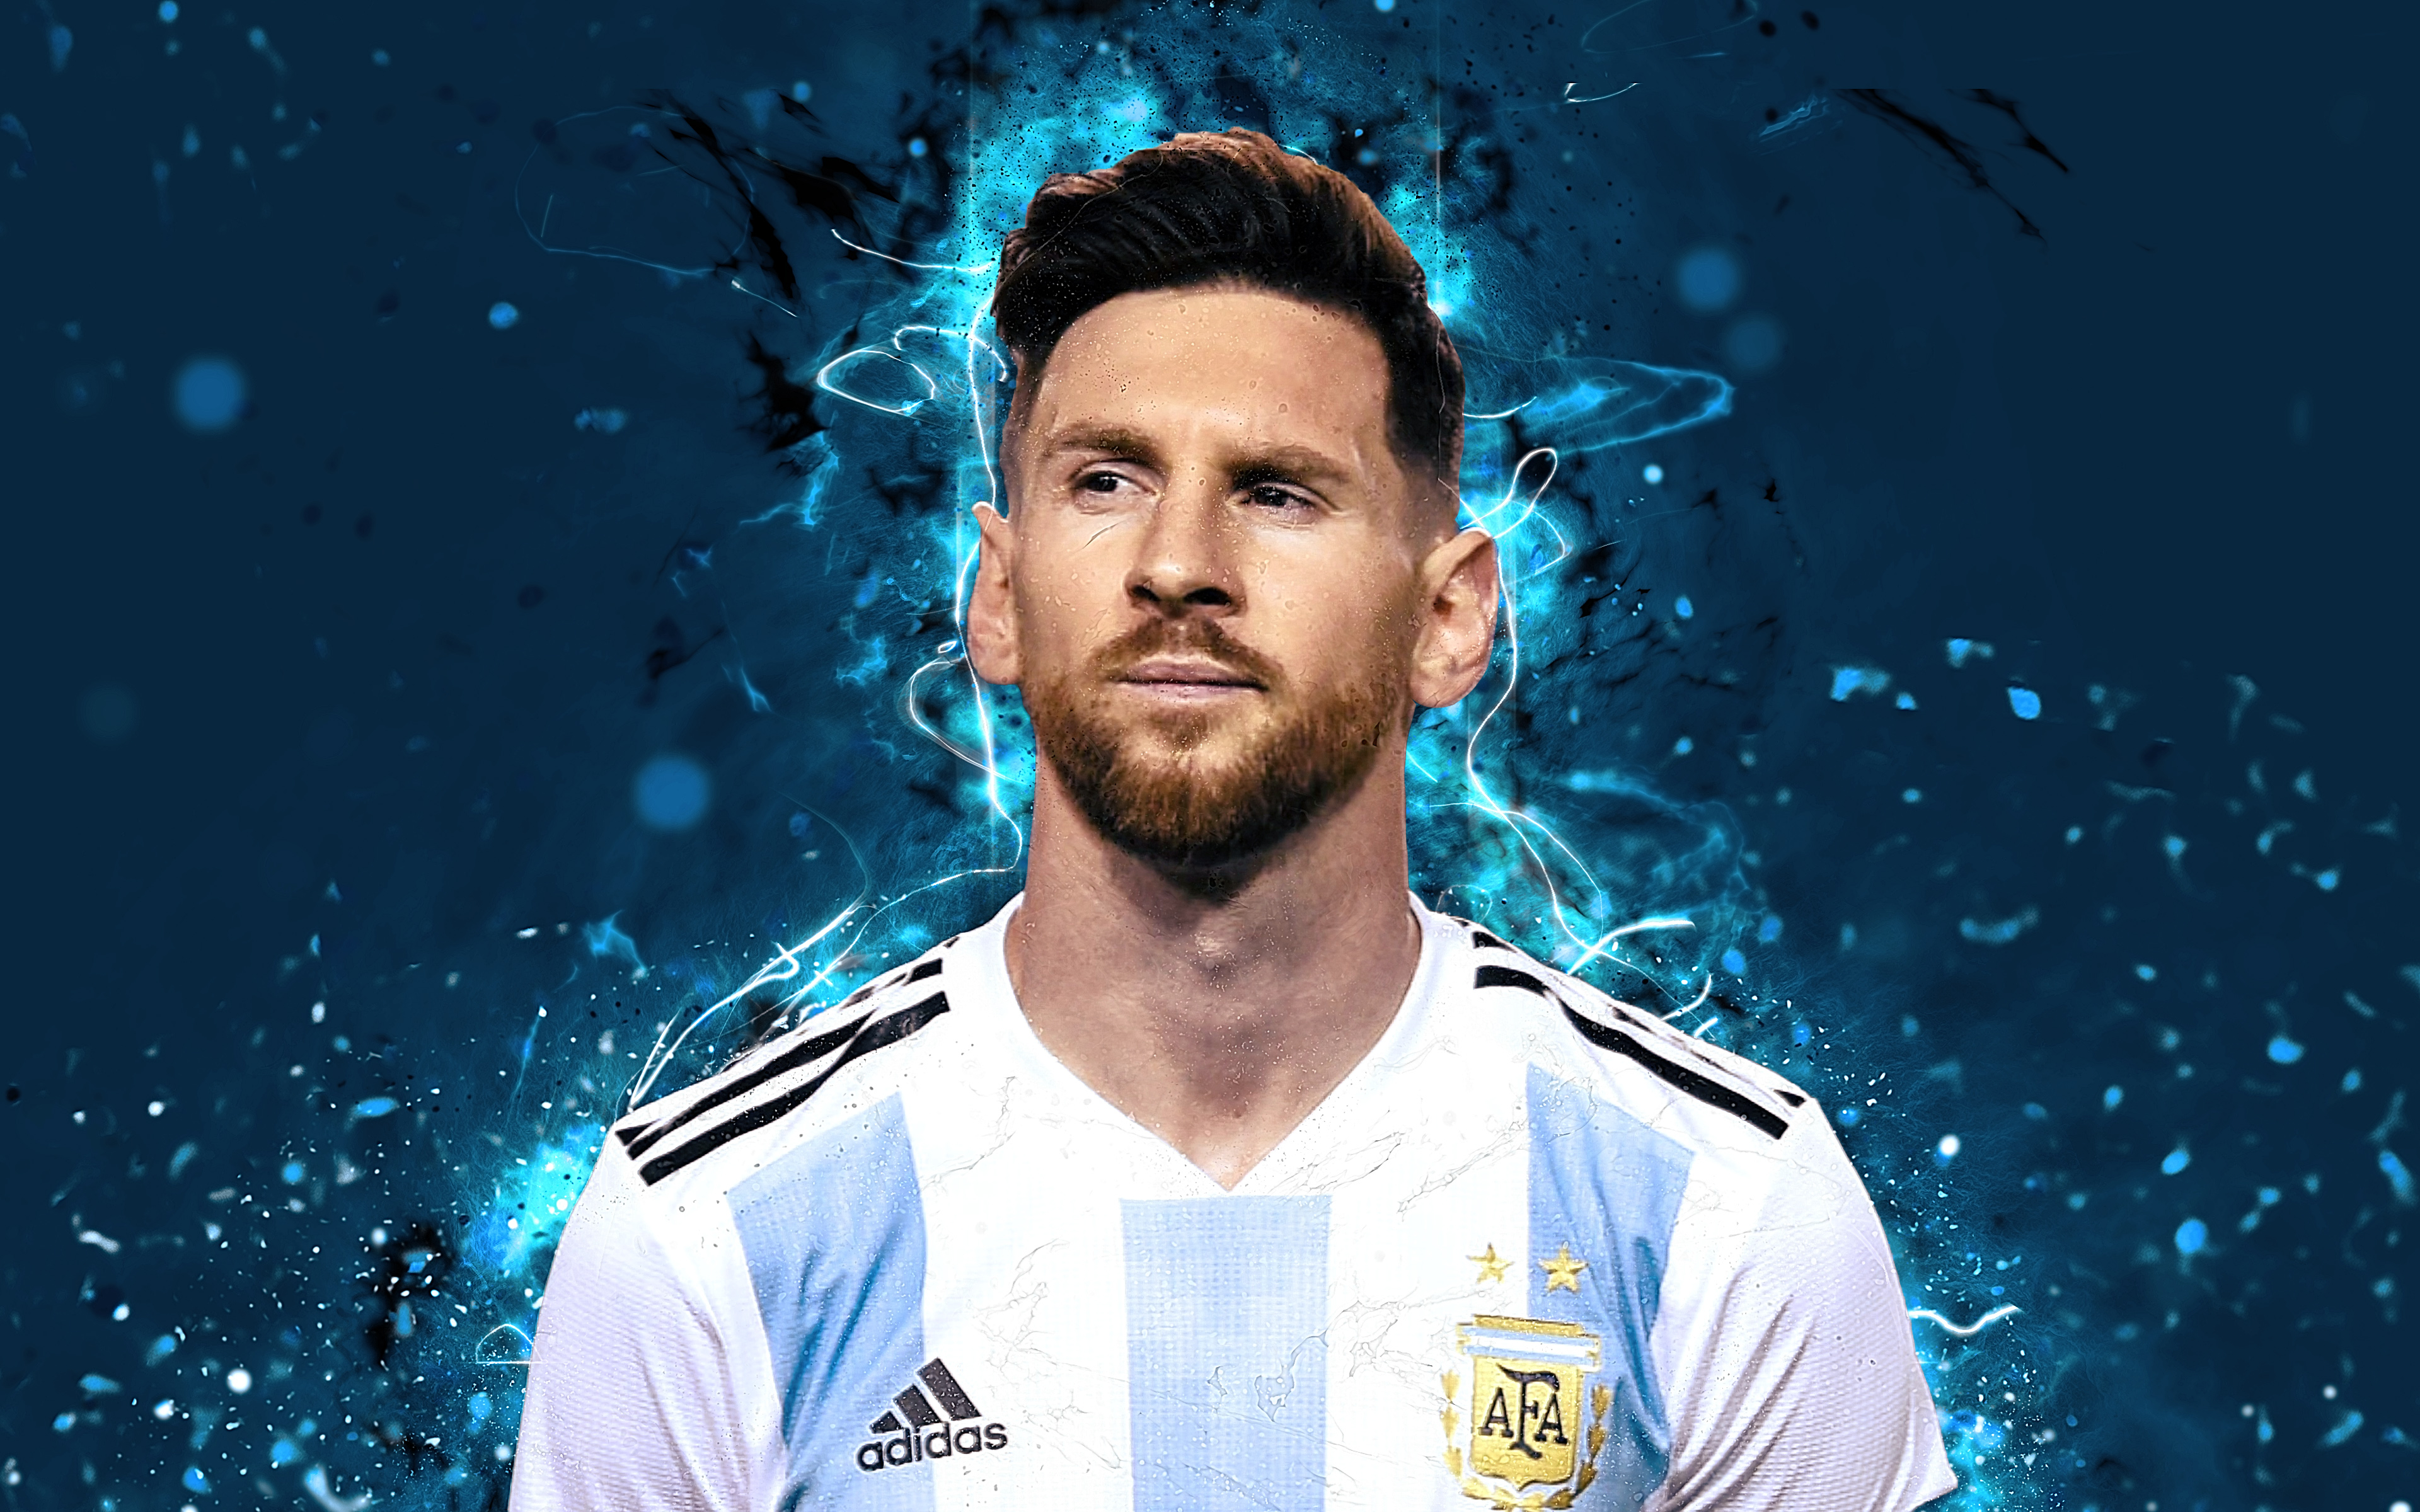 Đừng bỏ lỡ cơ hội để chiêm ngưỡng vẻ đẹp hoàn hảo của Messi thông qua bức hình nền 4K liên quan tới ĐT Argentina. Hãy cùng nhau ngắm nhìn những đường cong tuyệt đẹp với độ phân giải tuyệt vời này!